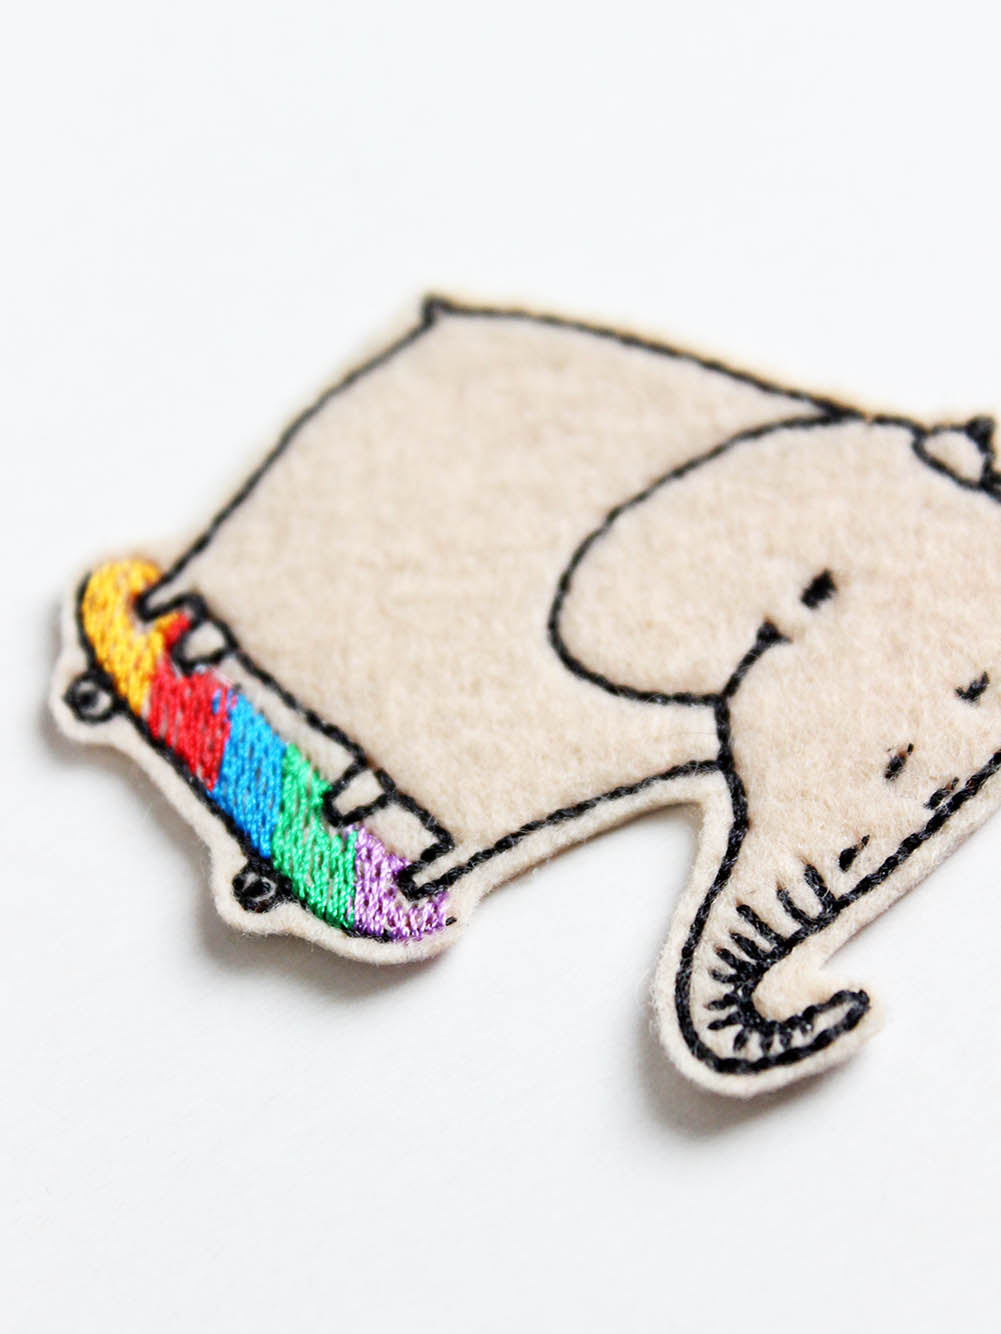 Detailansicht von einem Bügelflicken mit Elefant der Skateboard fährt, das Skateboard ist in Regenbogenfarben